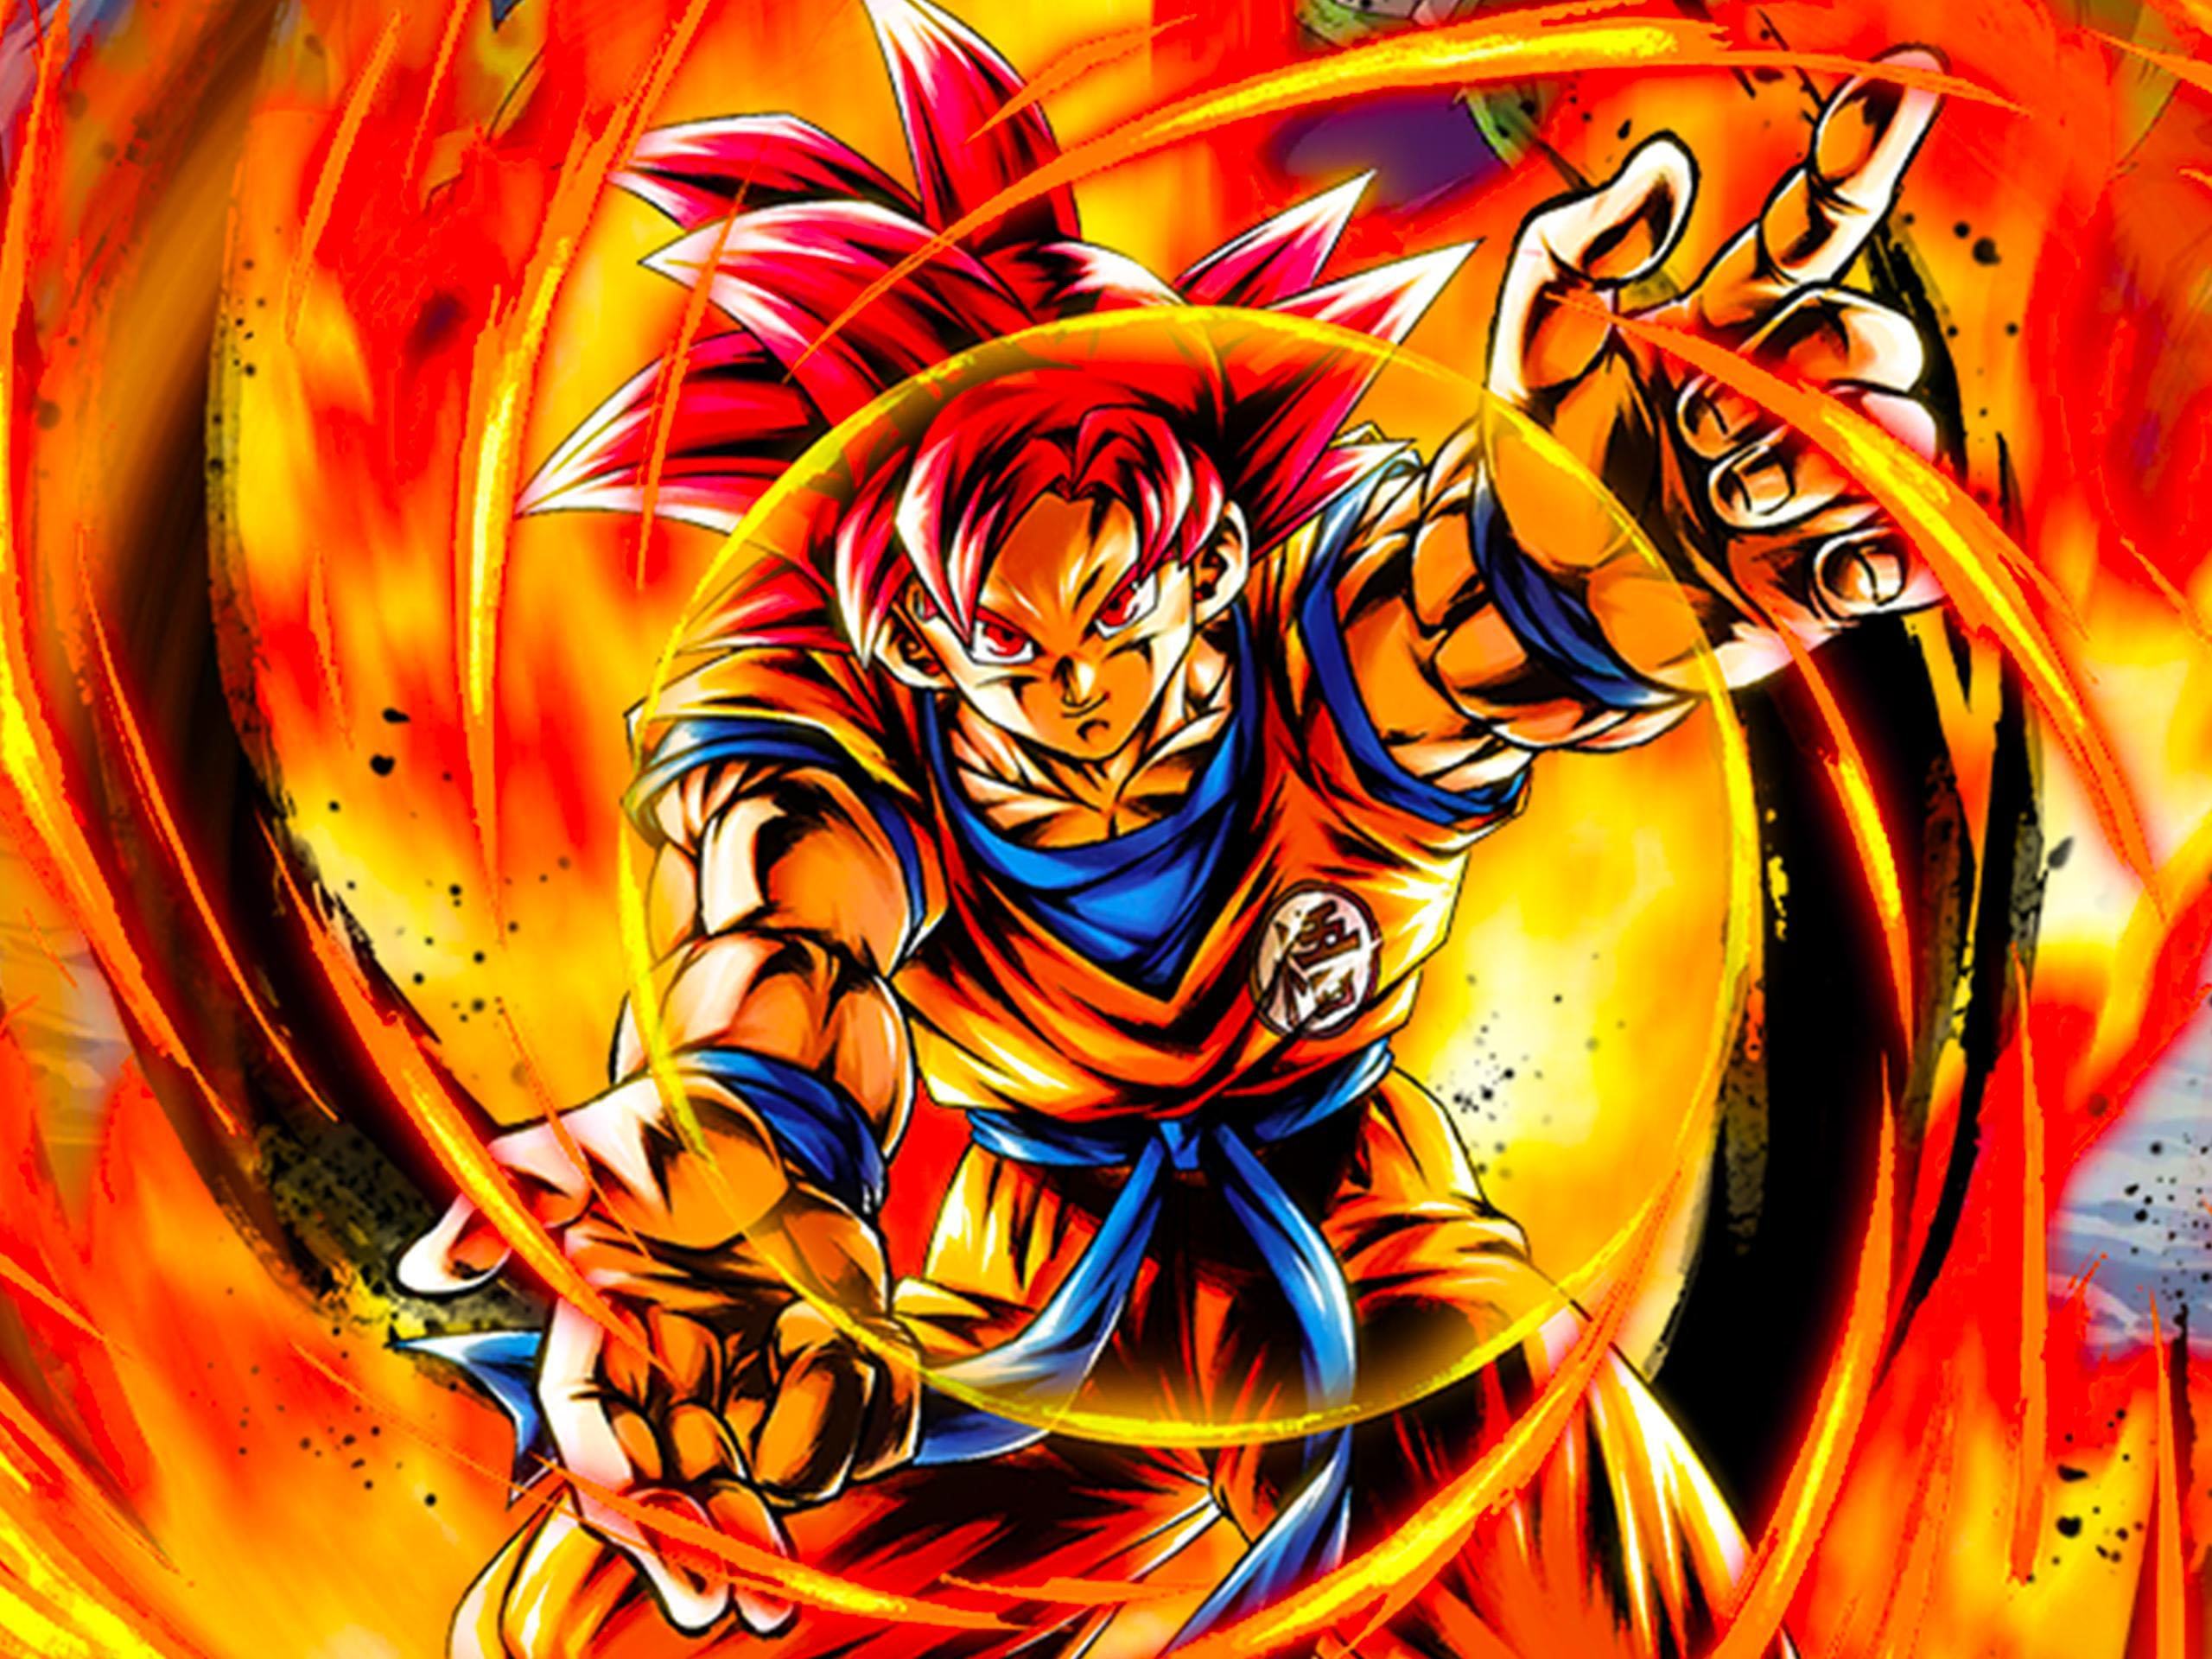 Sơn Goku là một chiến binh siêu cấp, người đã cứu thế giới nhiều lần. Cấp cuối cùng là trận chiến đầy thử thách của anh ta trước khi anh ta bước vào tuổi dậy thì. Bạn sẽ không muốn bỏ lỡ hình ảnh về Sơn Goku trong trận chiến quyết định này đâu!